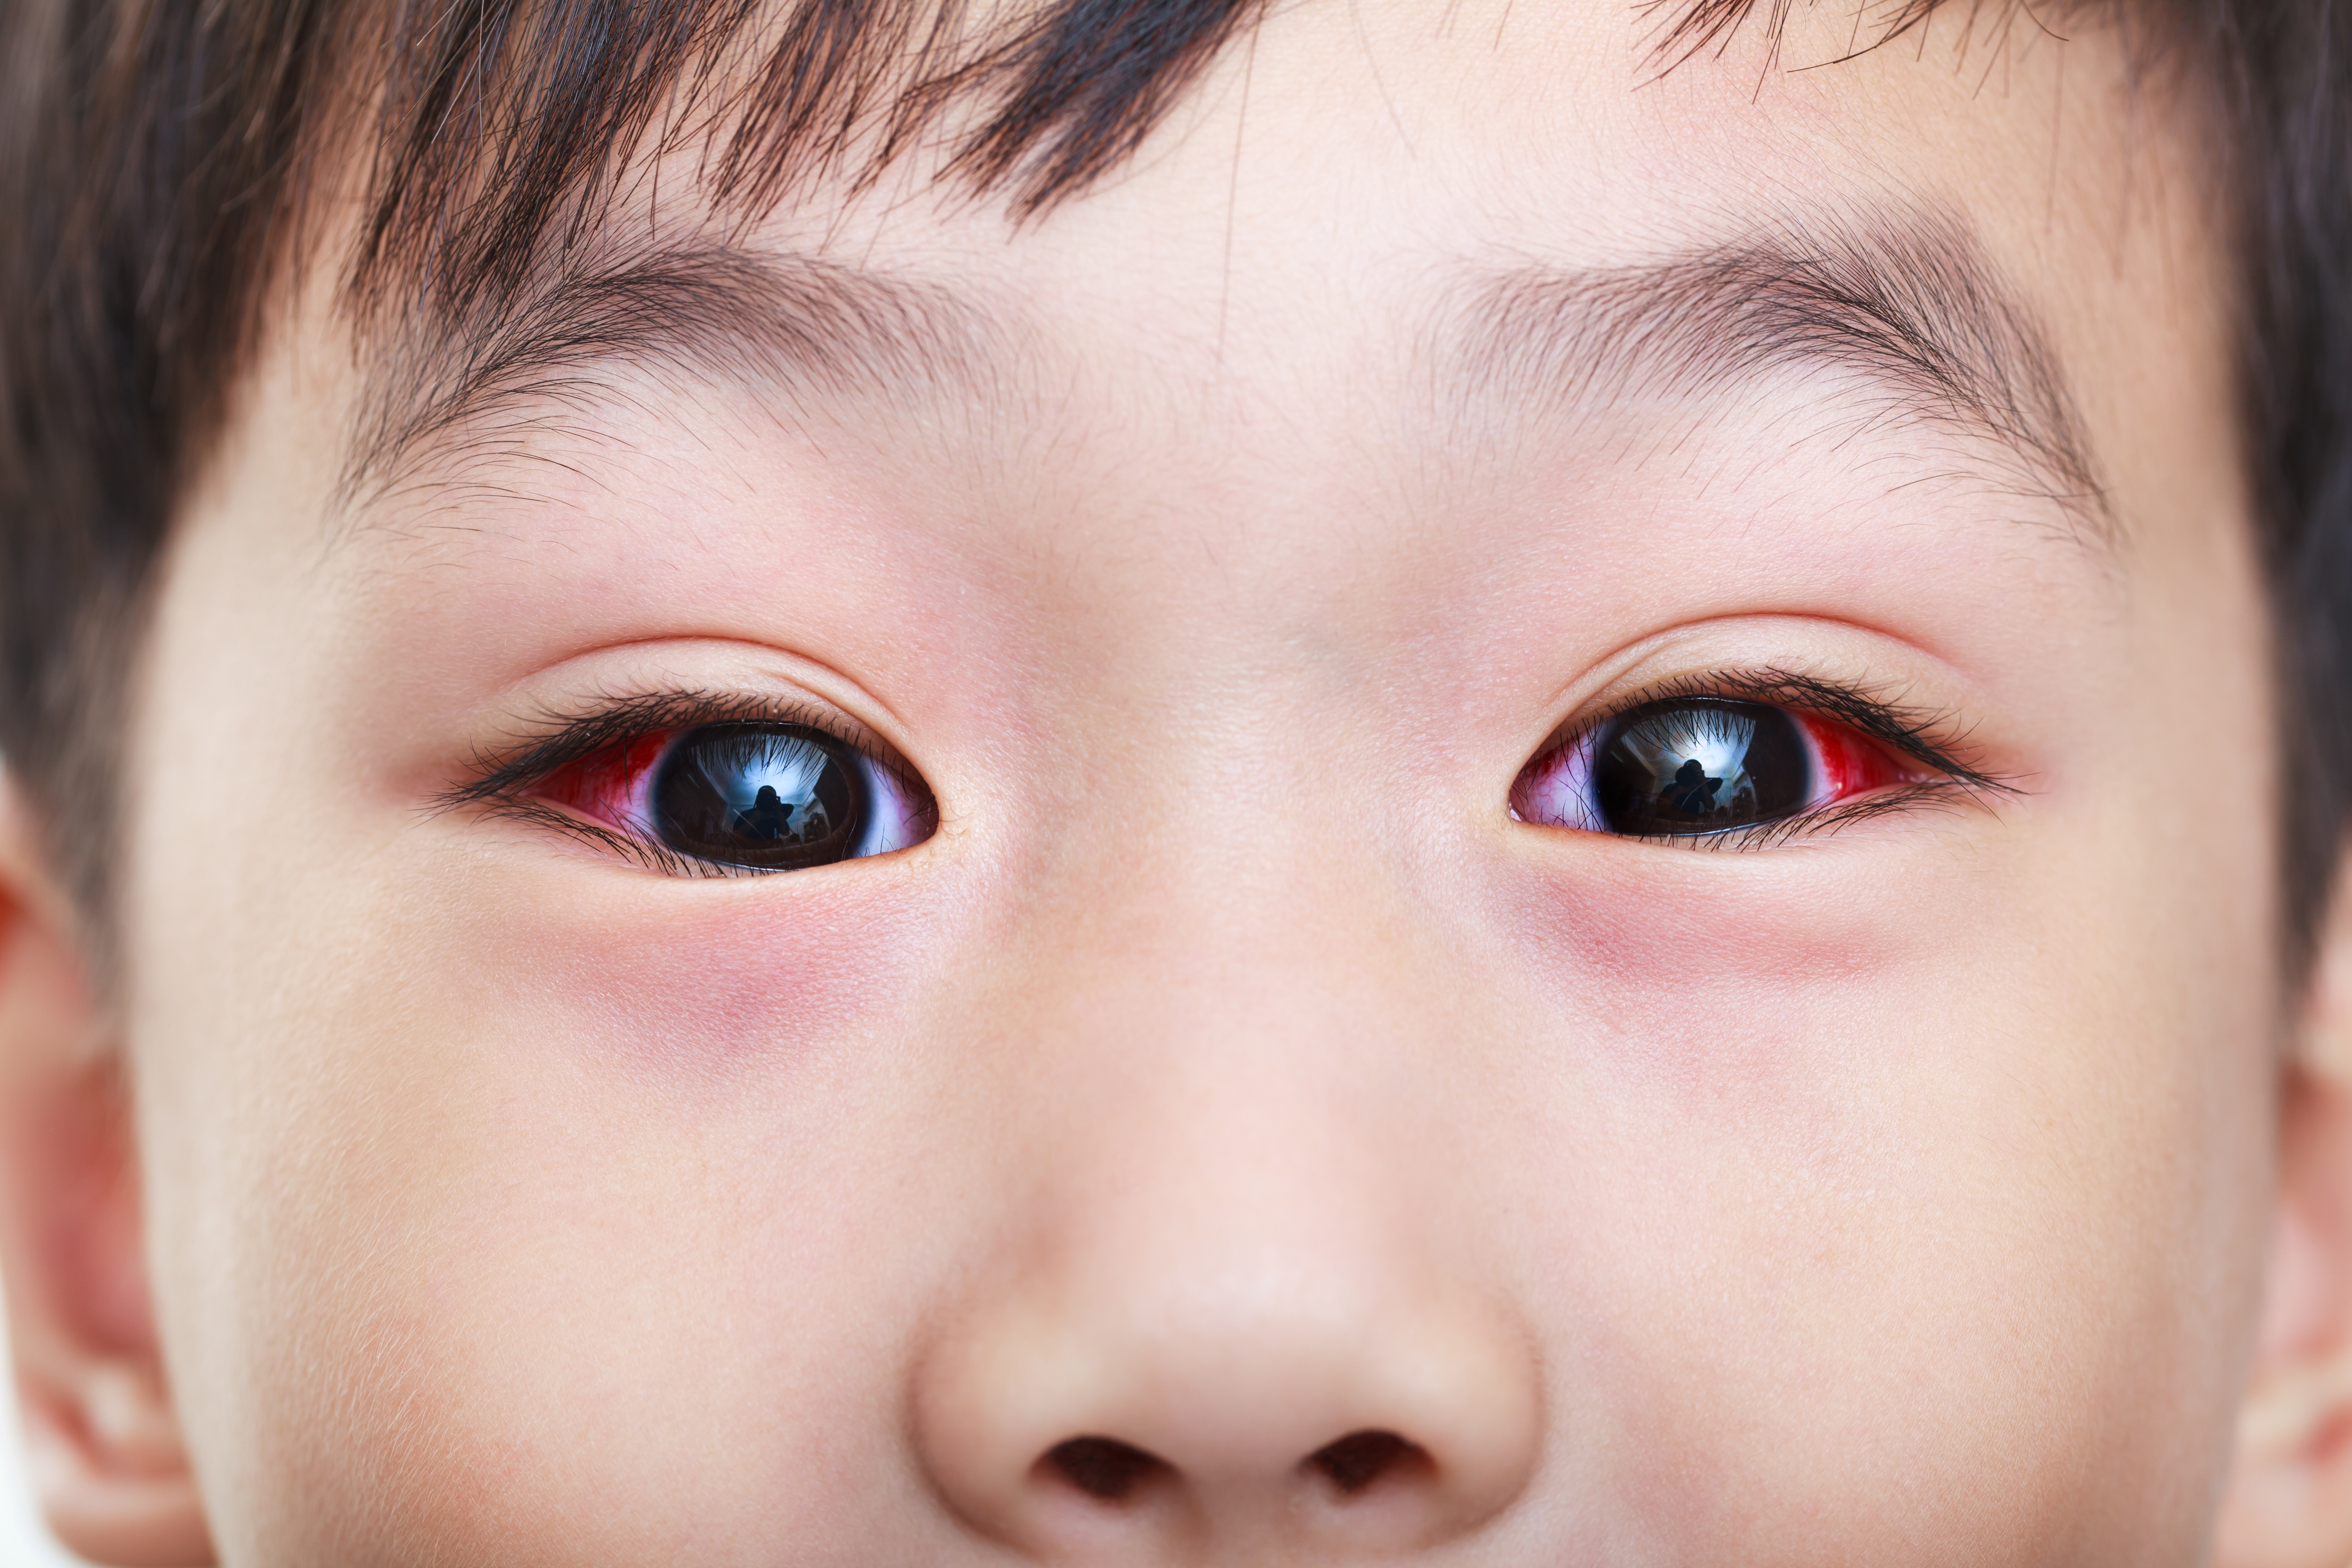 紅眼症是嬰幼兒常見眼疾